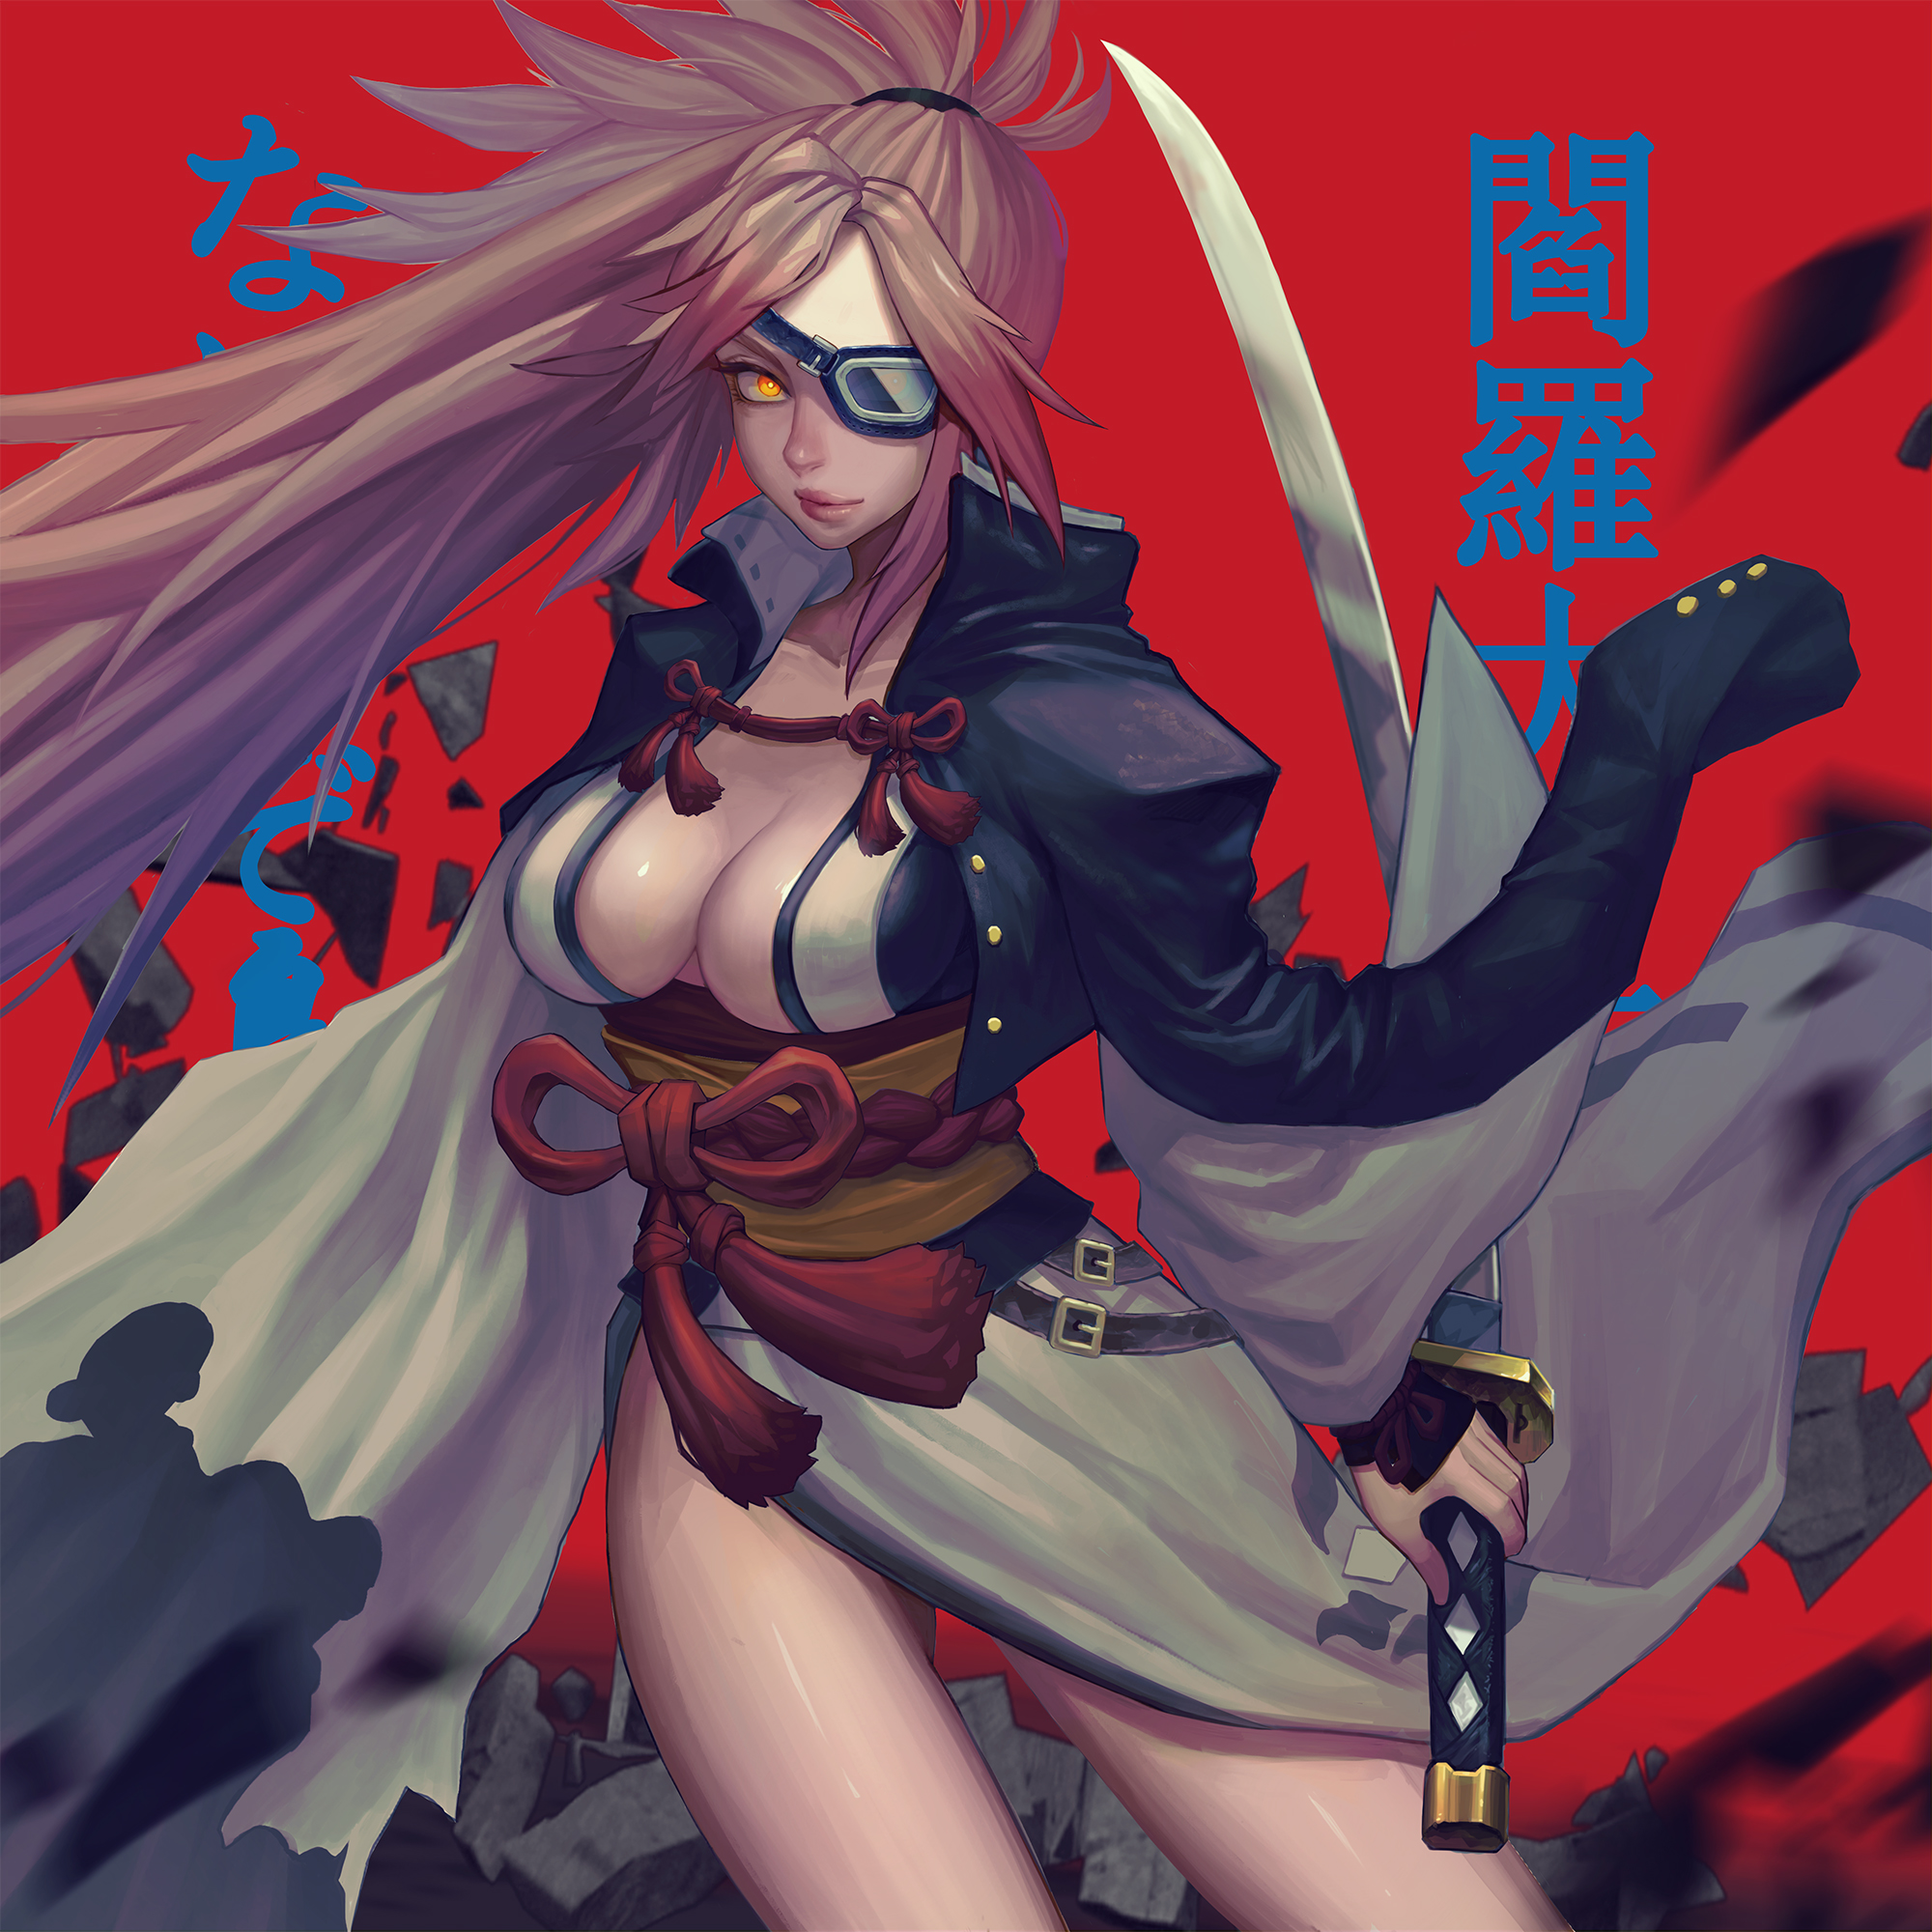 Baiken Guilty Gear Guilty Gear Strive Anime Games Anime Girls Samurai 2000x2000